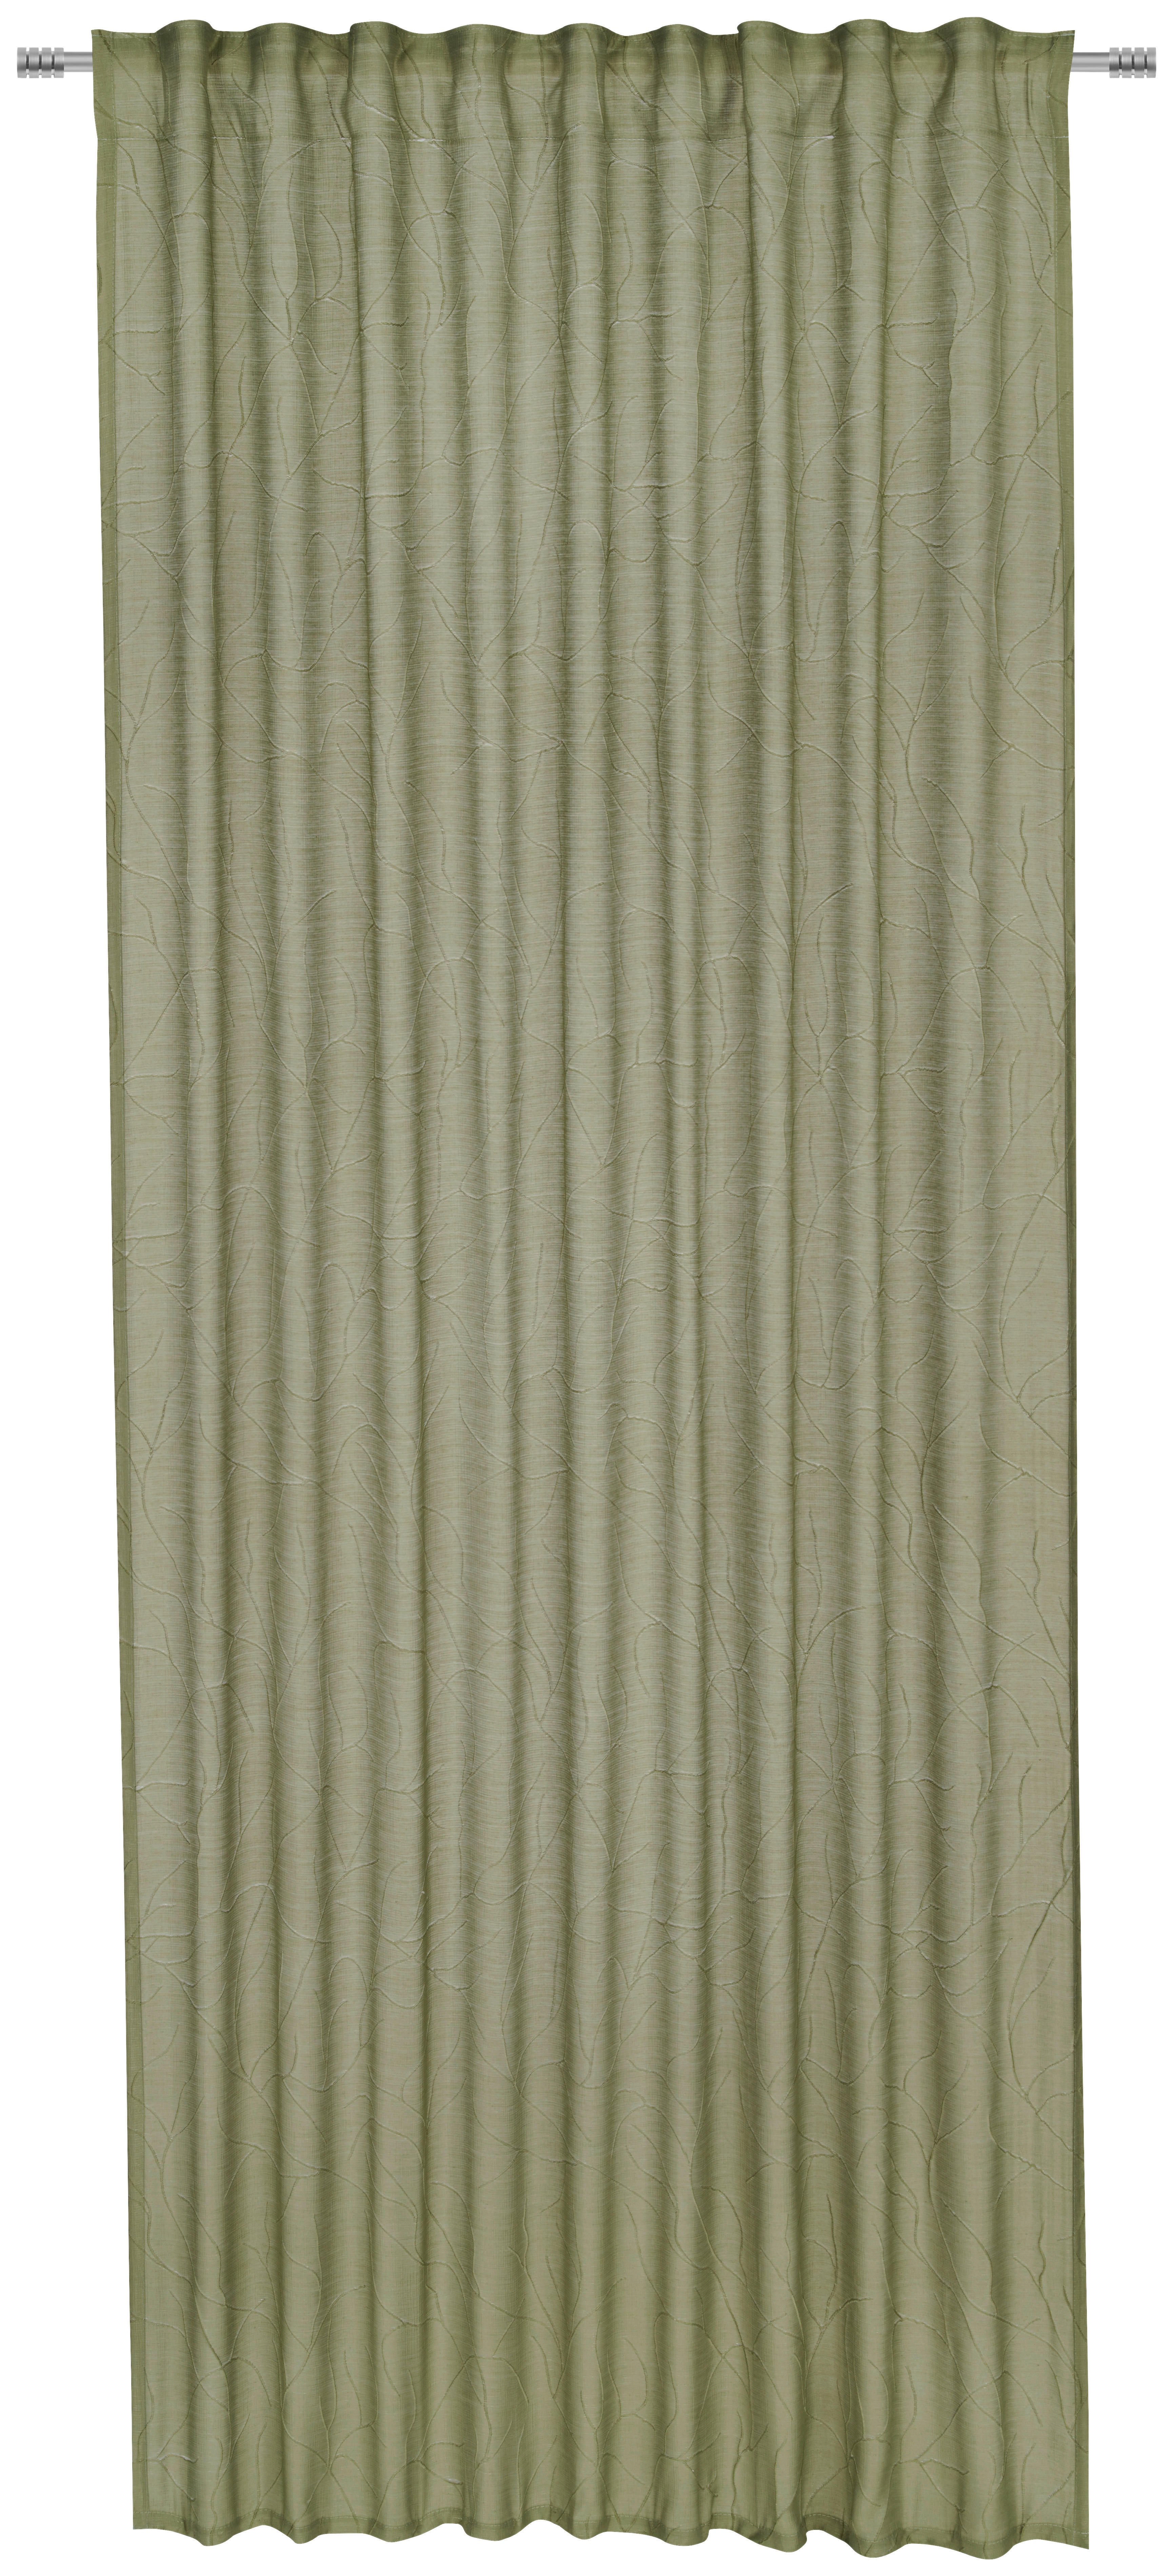 GARDINLÄNGD halvtransparent  - grön, Basics, textil (135/245cm) - Esposa